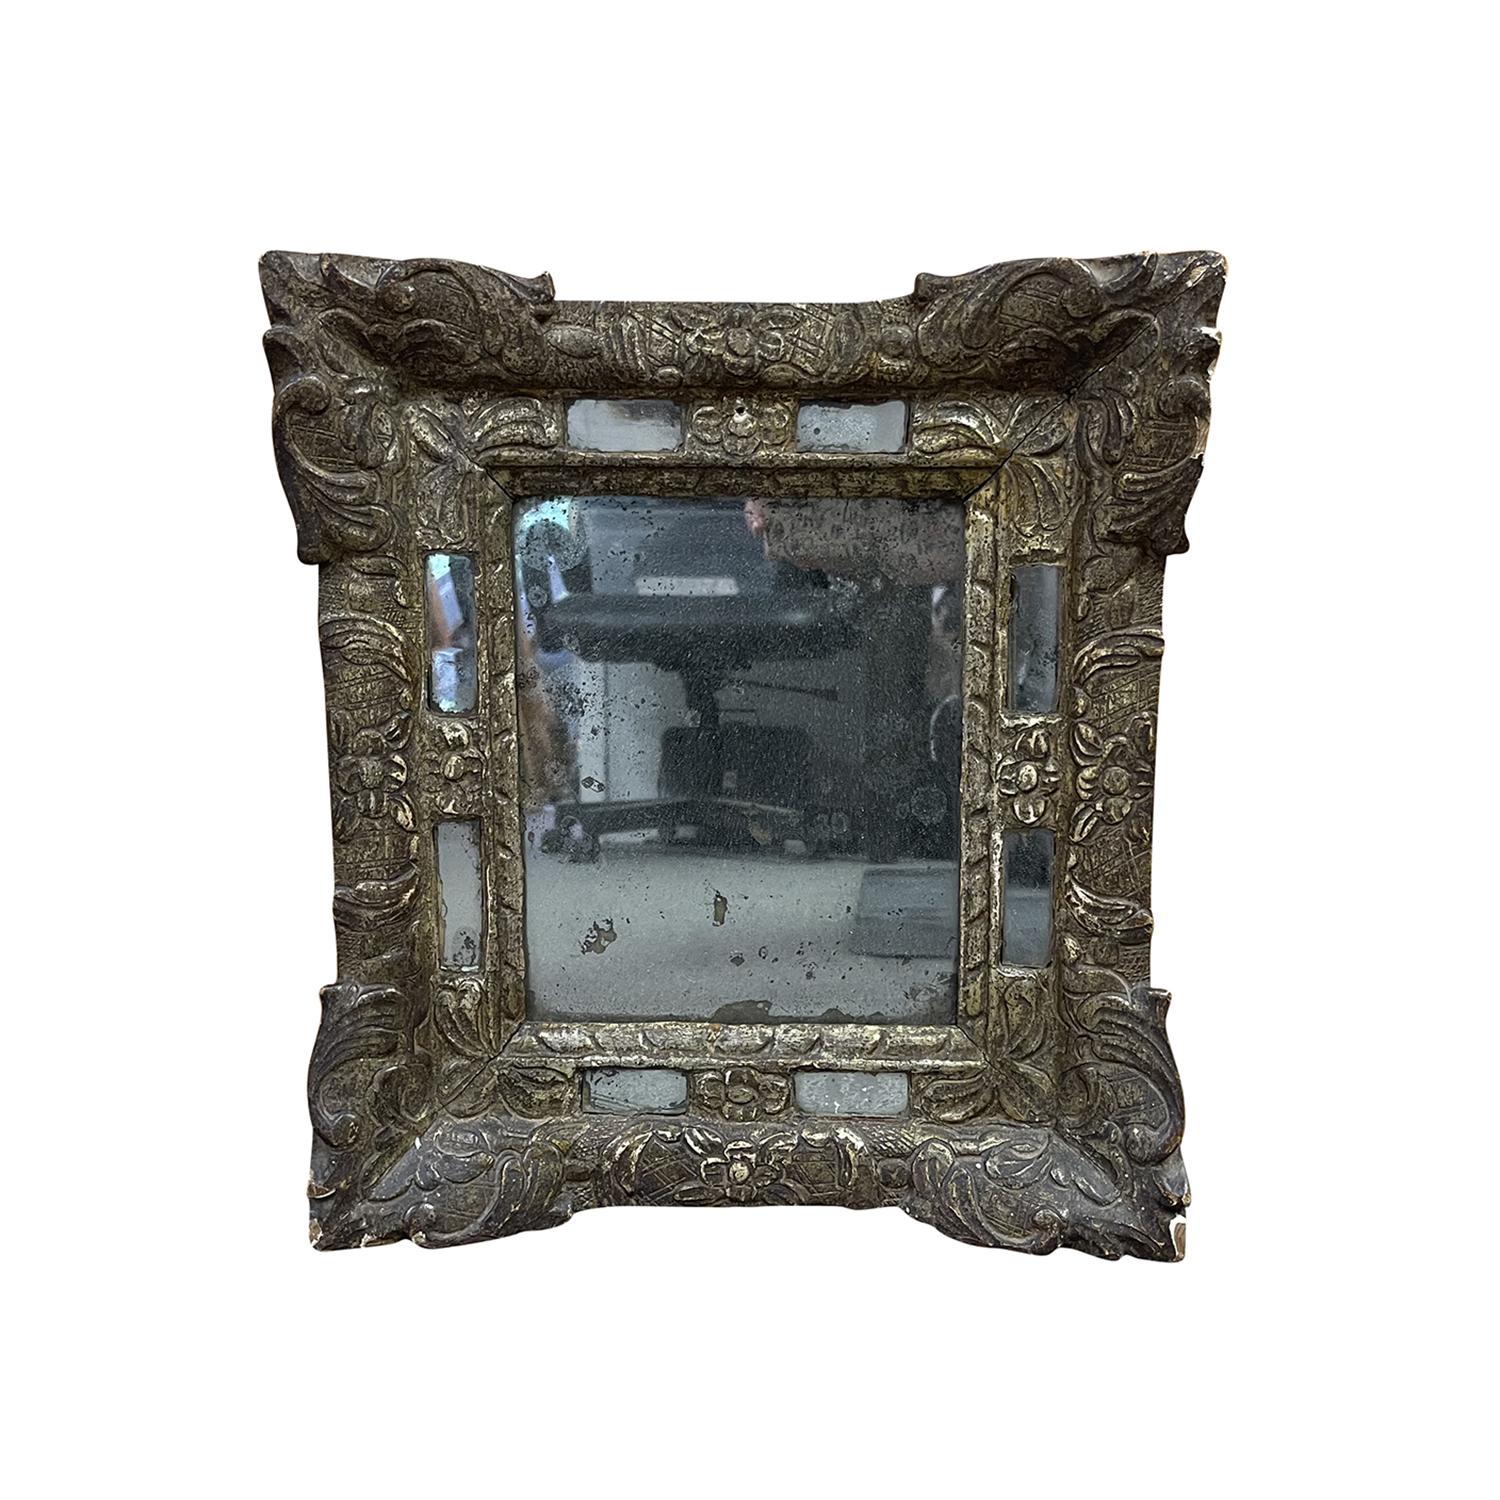 Miroir mural ancien du XVIIIe siècle en bois doré à double encadrement, sculpté à la main dans le bois, avec la plaque de miroir d'origine, en bon état. Décorée d'une élégante bordure florale. Décoloration mineure due à l'âge. Usure conforme à l'âge